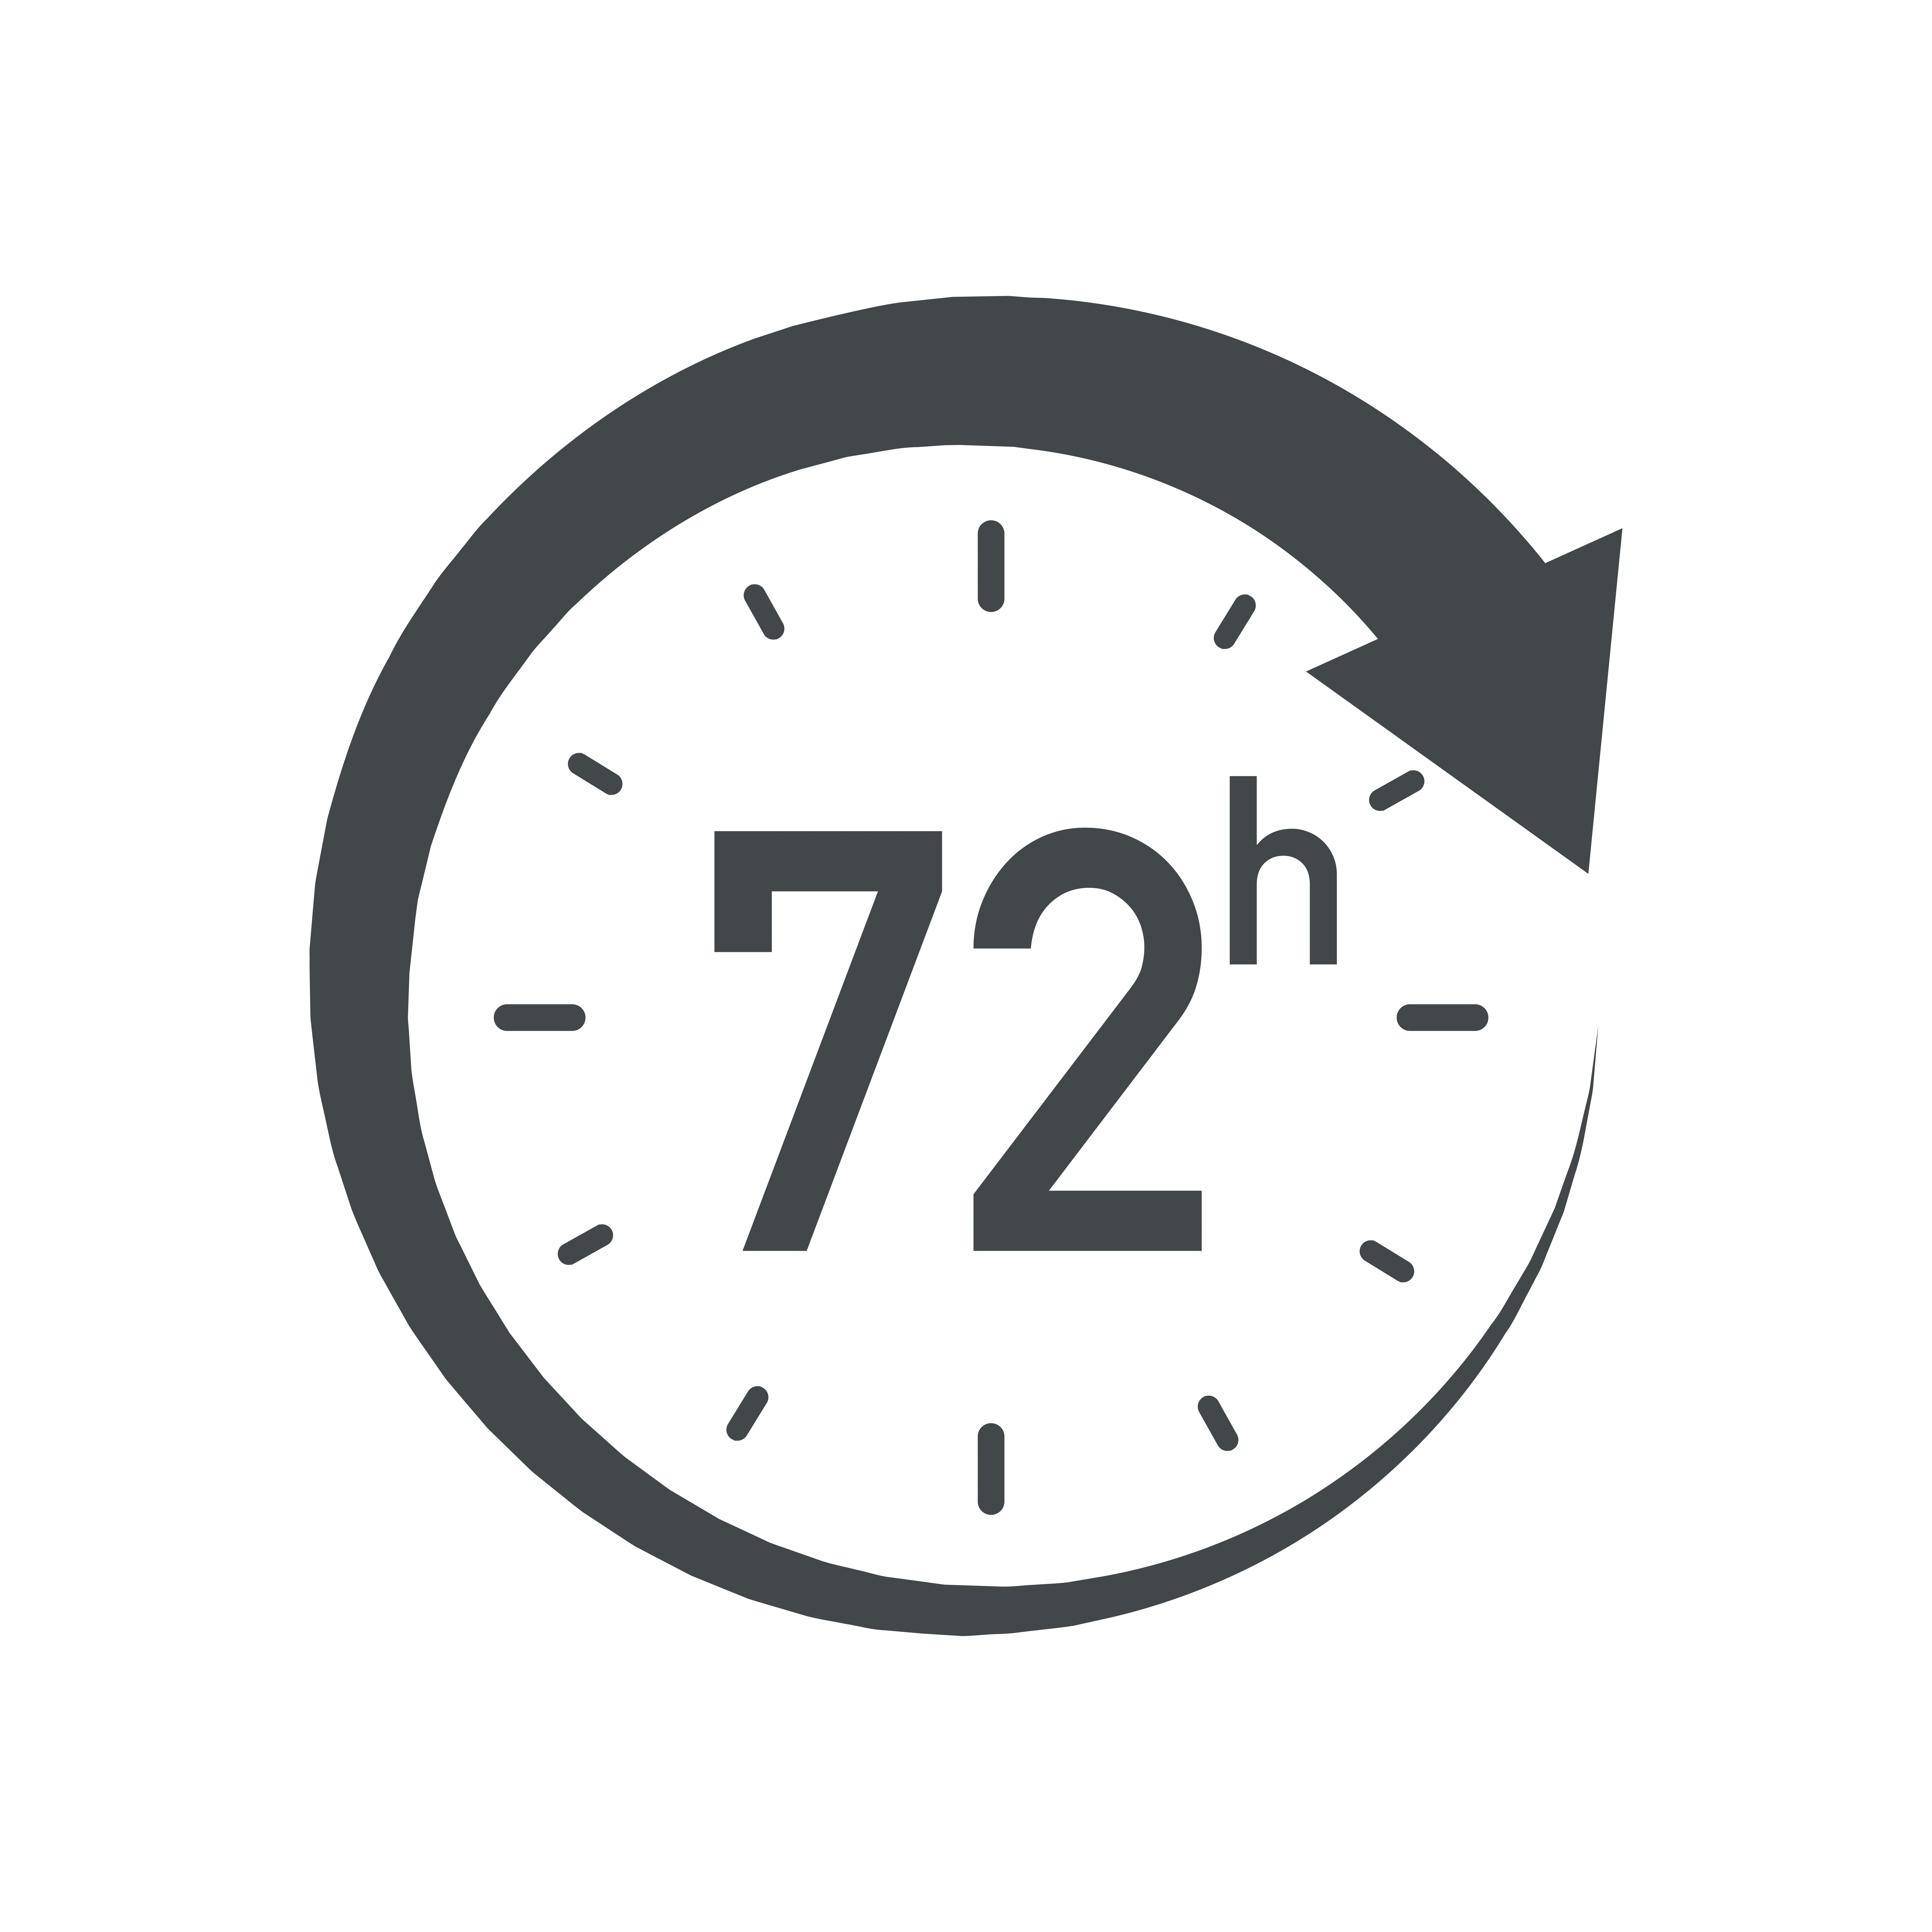 Завтра в 7 00. Значок 24 часа. 24 Часа вектор. 24/7 Логотип. Часы вектор 24 часа.